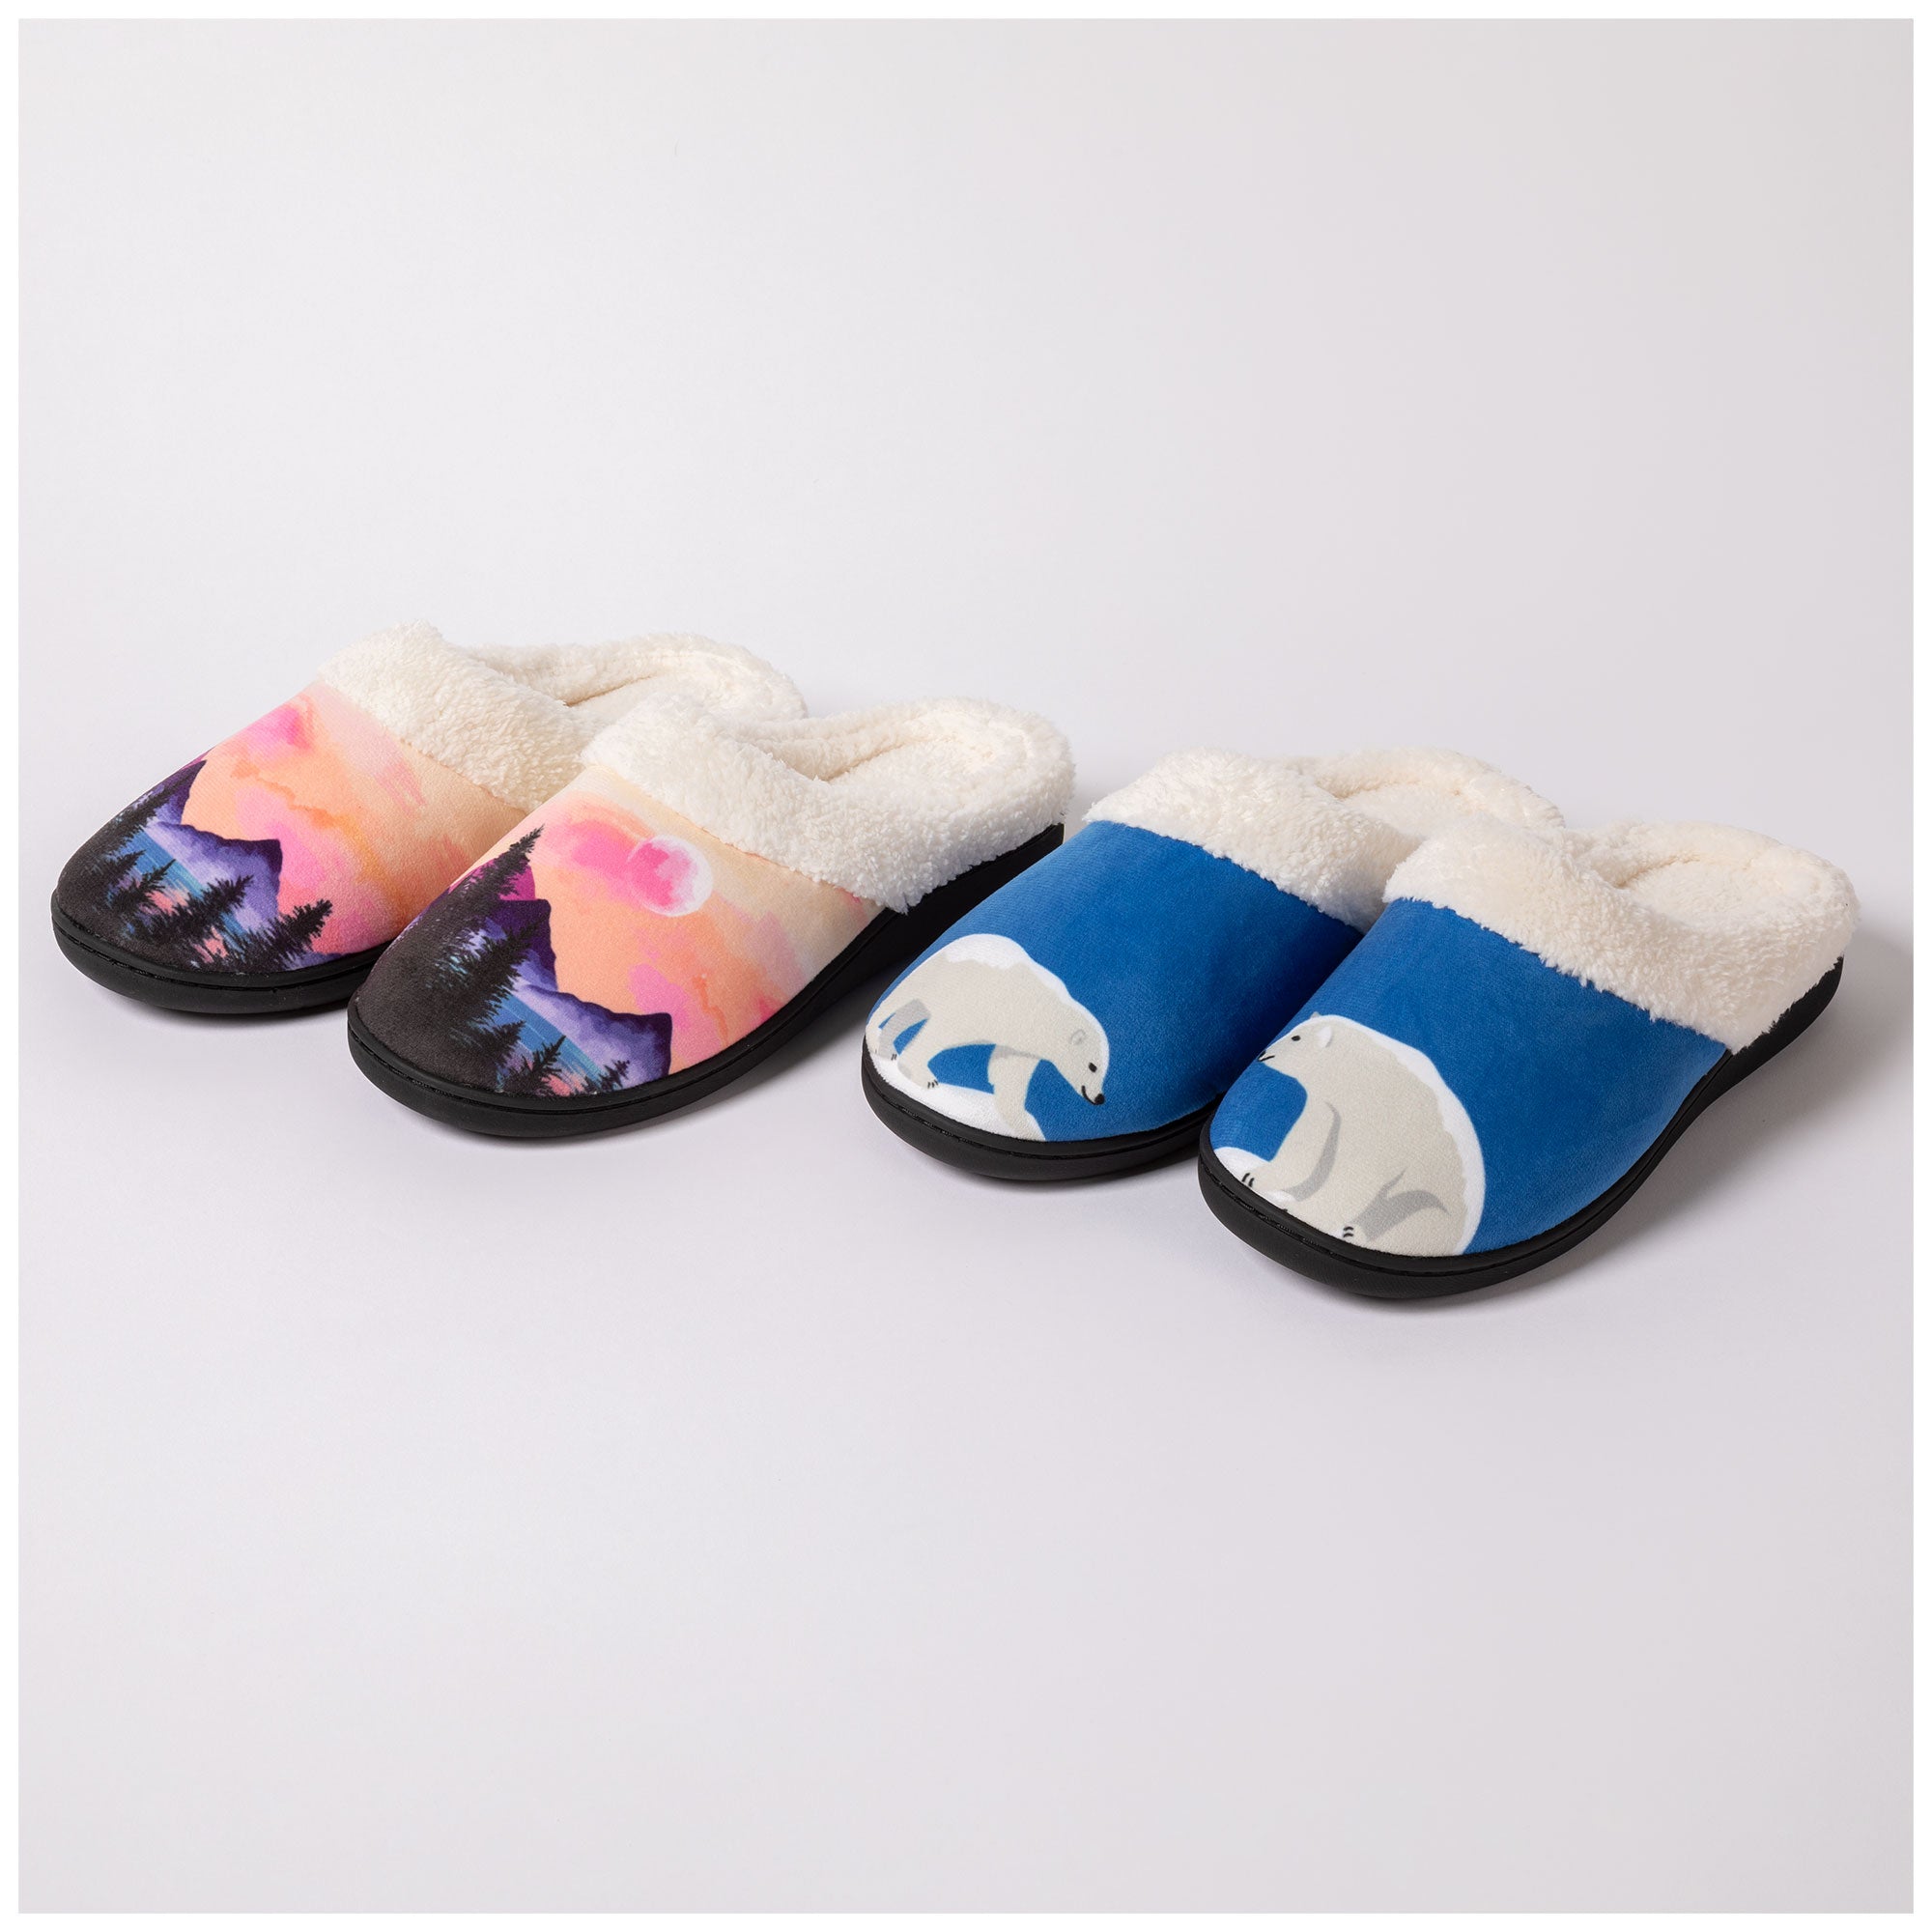 Dream Slide Slippers - Polar Bear - XL